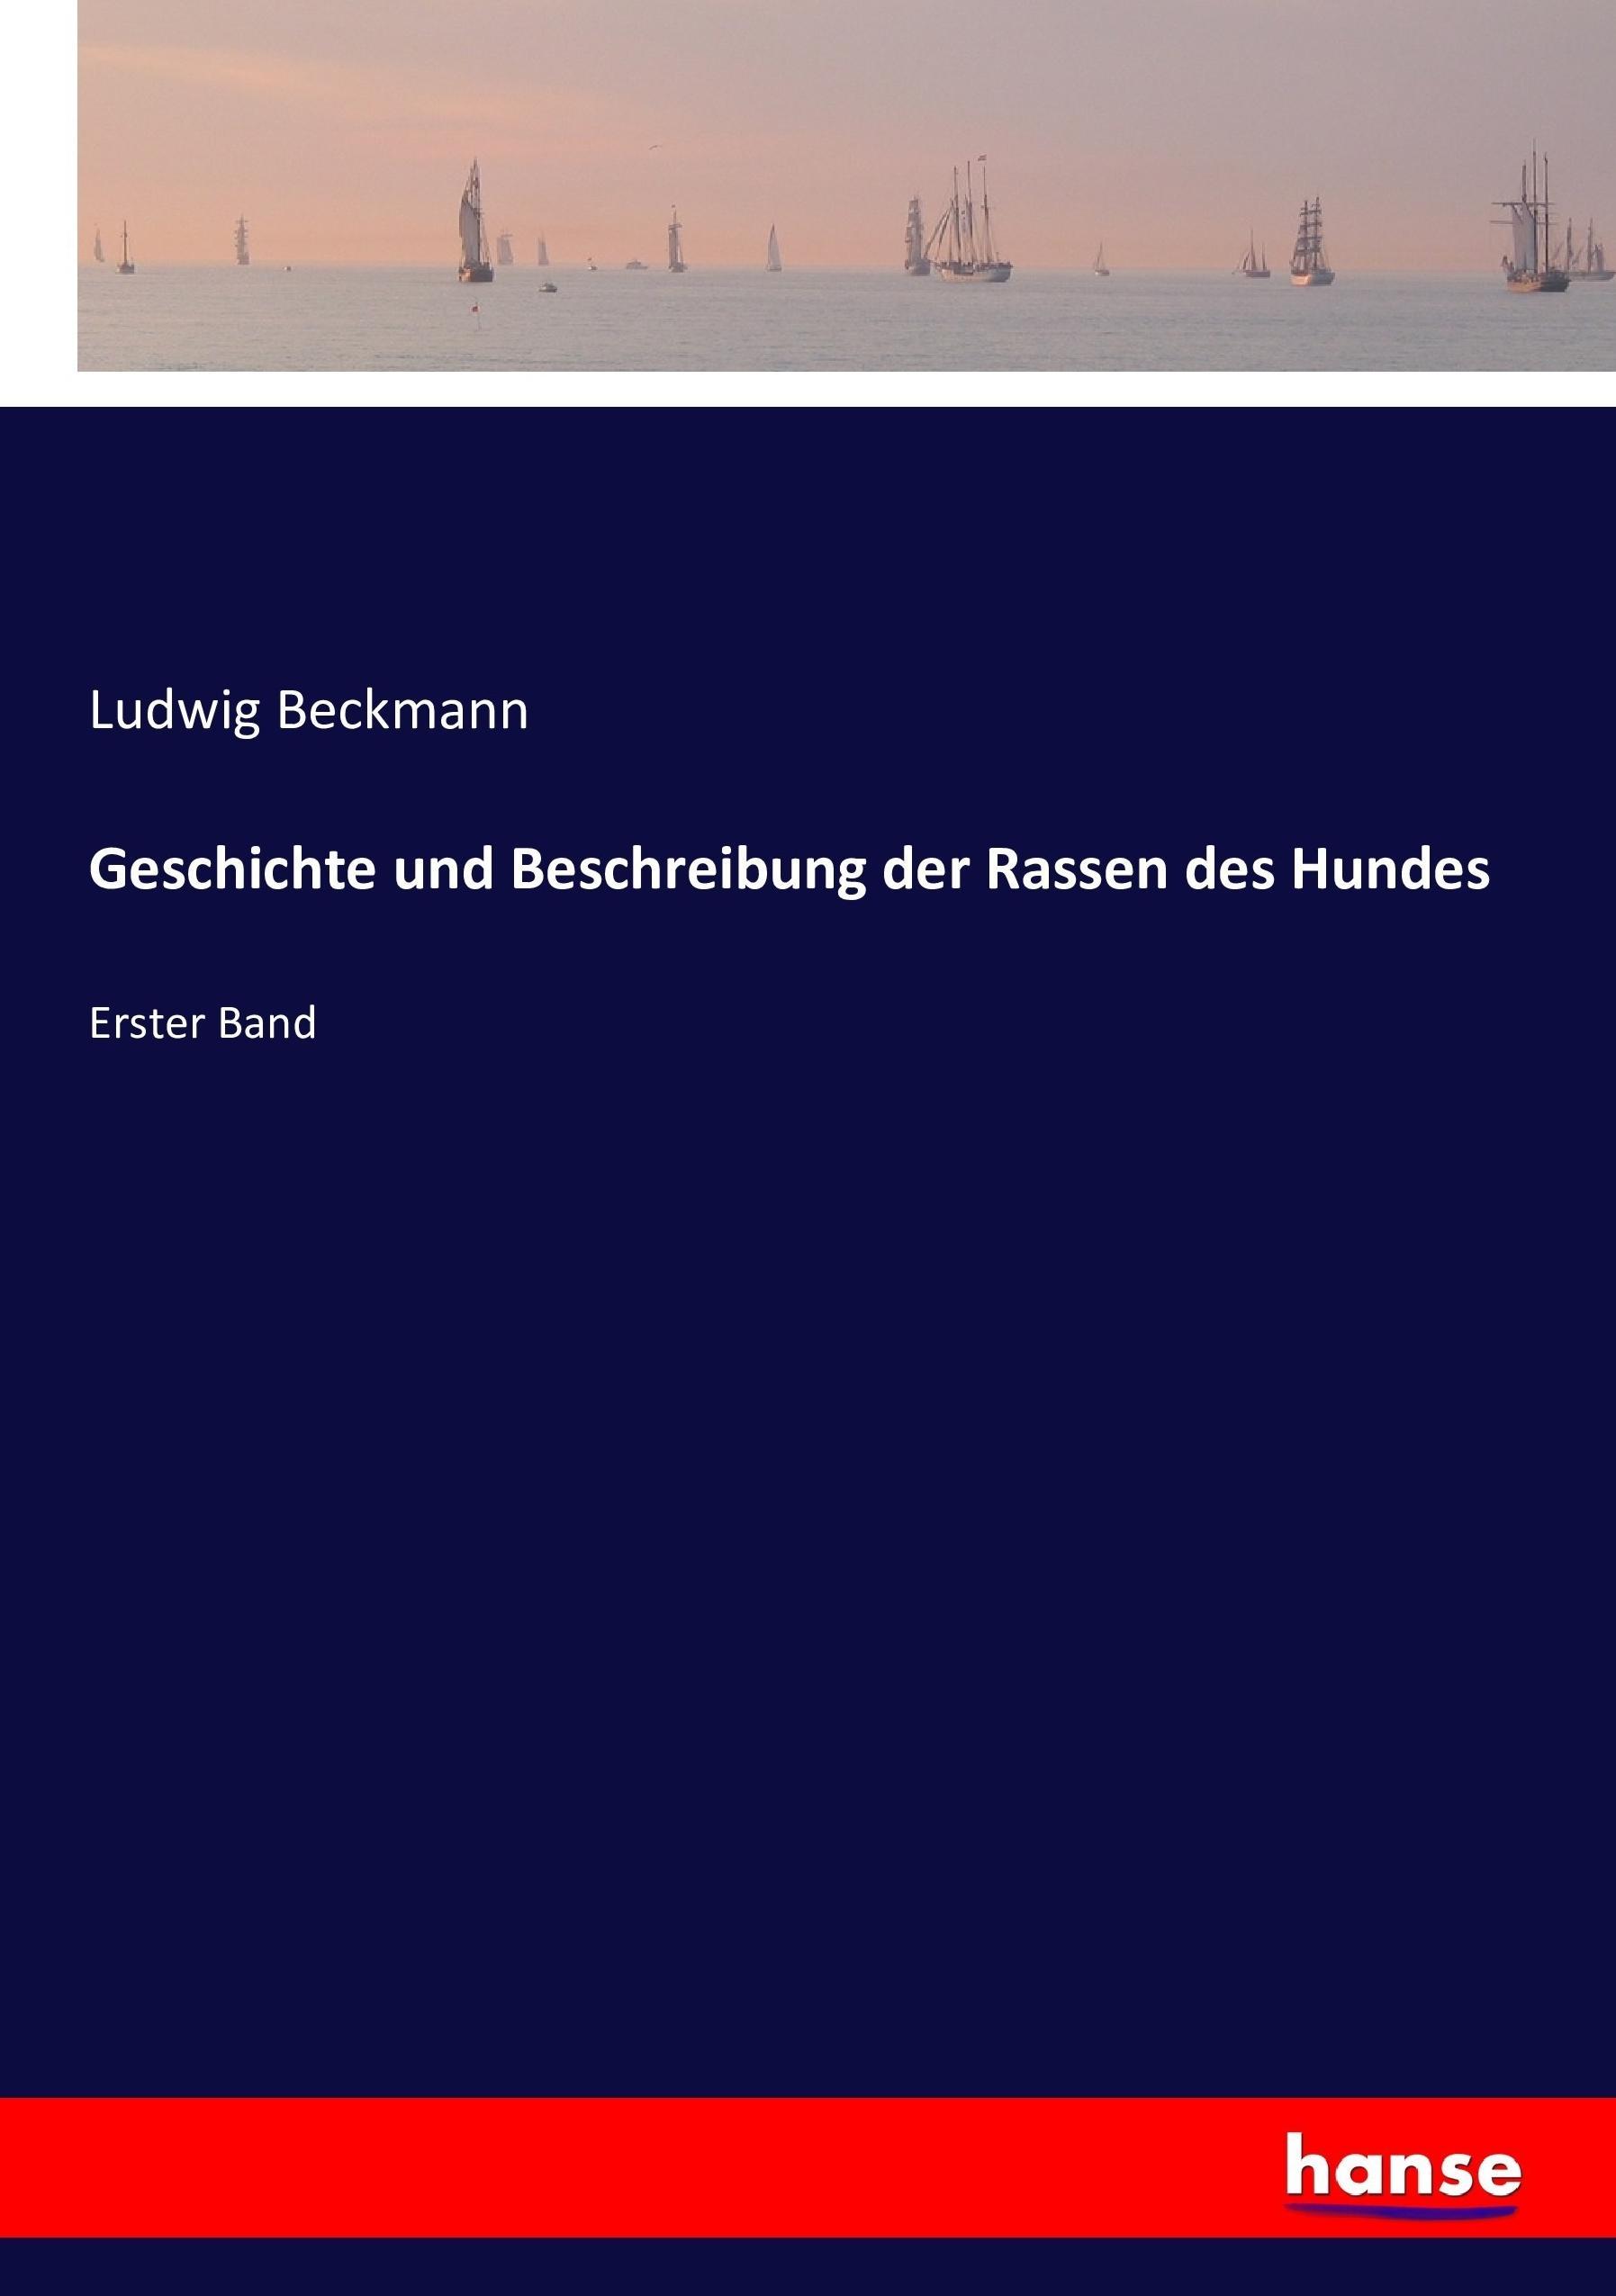 Geschichte und Beschreibung der Rassen des Hundes / Erster Band / Ludwig Beckmann / Taschenbuch / Paperback / 480 S. / Deutsch / 2016 / hansebooks / EAN 9783743413320 - Beckmann, Ludwig